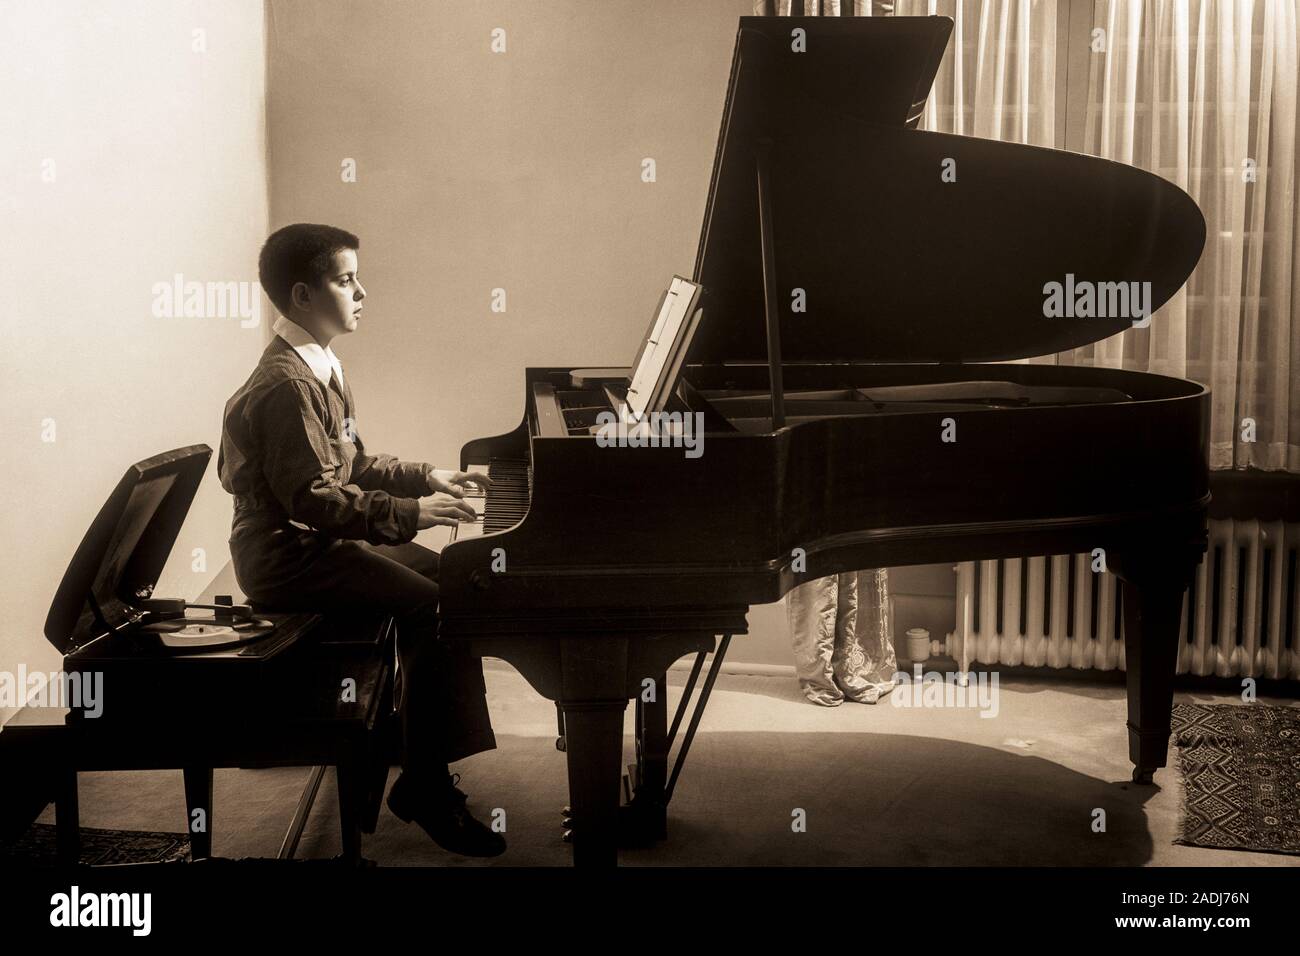 1950 BOY PRACTICING JOUER PIANO à l'ÉCOUTE DE RECORD PLAYER ASSIS À CÔTÉ DE LUI SUR LE BANC - m2106 HAR001 INSPIRATION HARS CONFIANCE DIVERTISSEMENT MÂLES B&W DE LA SCÈNE DES ARTS DE LA RÉUSSITE DES OBJECTIFS GRAND ANGLE RÊVES BONHEUR INTERPRÈTE STRATÉGIE FORCE PROGRÈS CHOIX FIERTÉ LOISIRS RECORD PLAYER SUR LES PROFESSIONS À LA CRÉATIVITÉ CONCEPTUELLE DE CONNEXION À CÔTÉ DE LA CROISSANCE DES JUVÉNILES LUI ÉLÉGANT PRÉ-ADO PRÉ-ADO GARÇON NOIR ET BLANC DE RELAXATION de précision de l'origine ethnique caucasienne HAR CONCENTRATION001 old fashioned pratiquer Banque D'Images